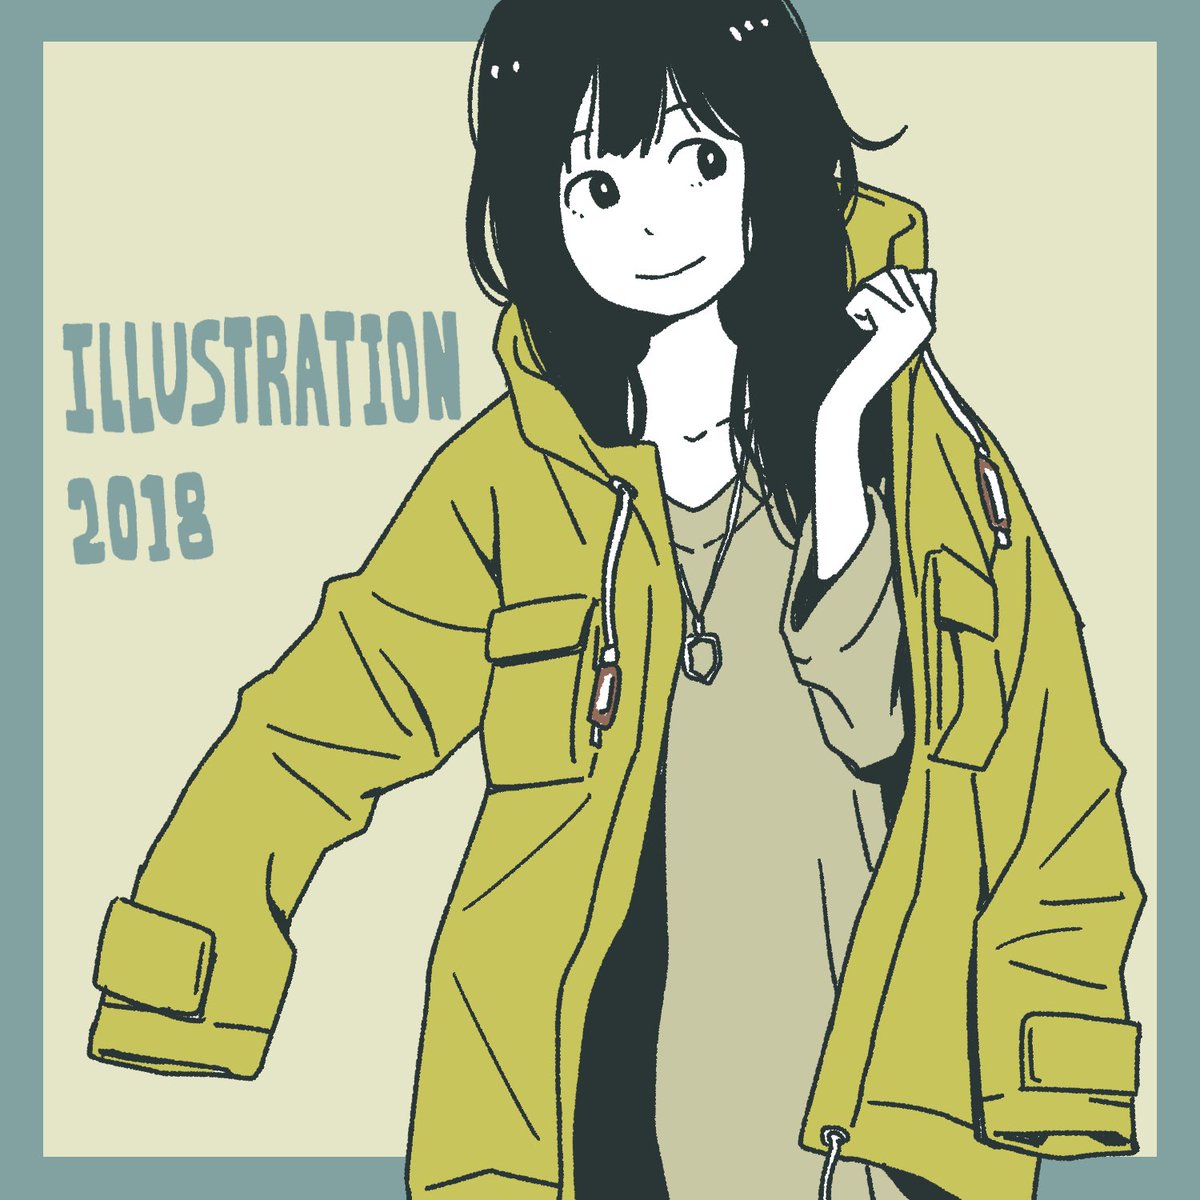 「ILLUSTRATION 2018の女の子描きました。https://t.co/」|みずす (イラストレーター)のイラスト